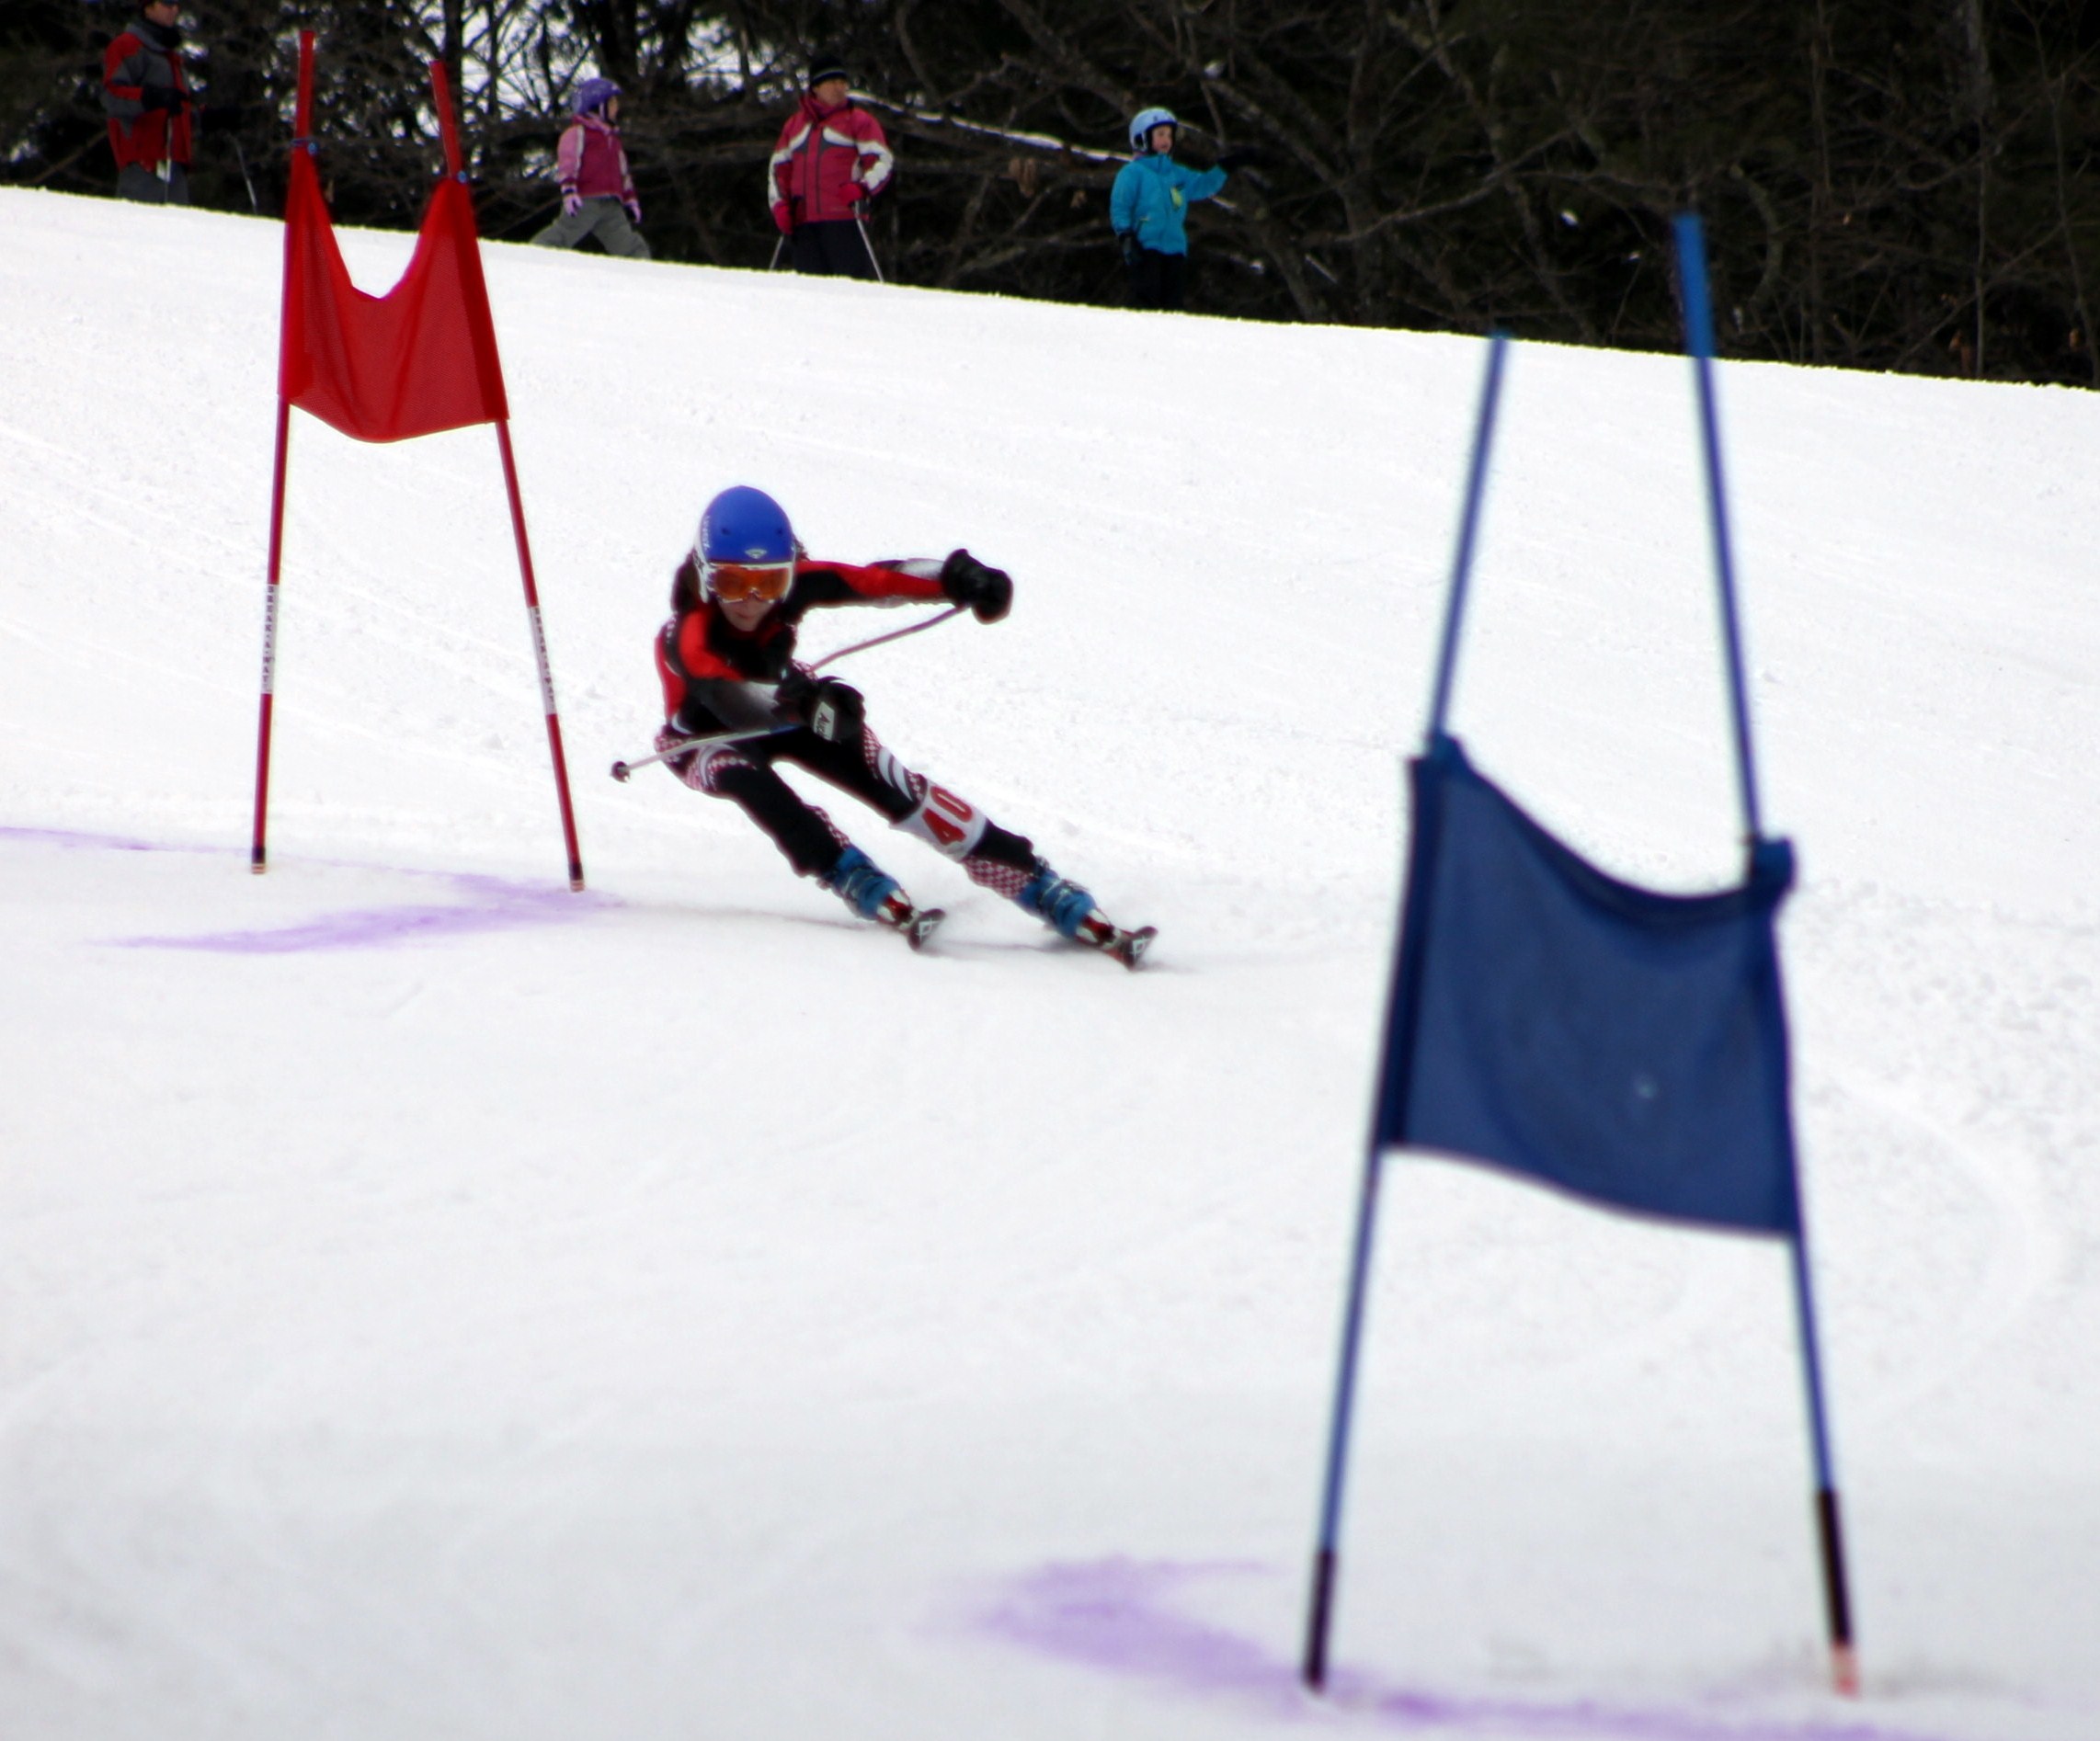 ski racer in slalom